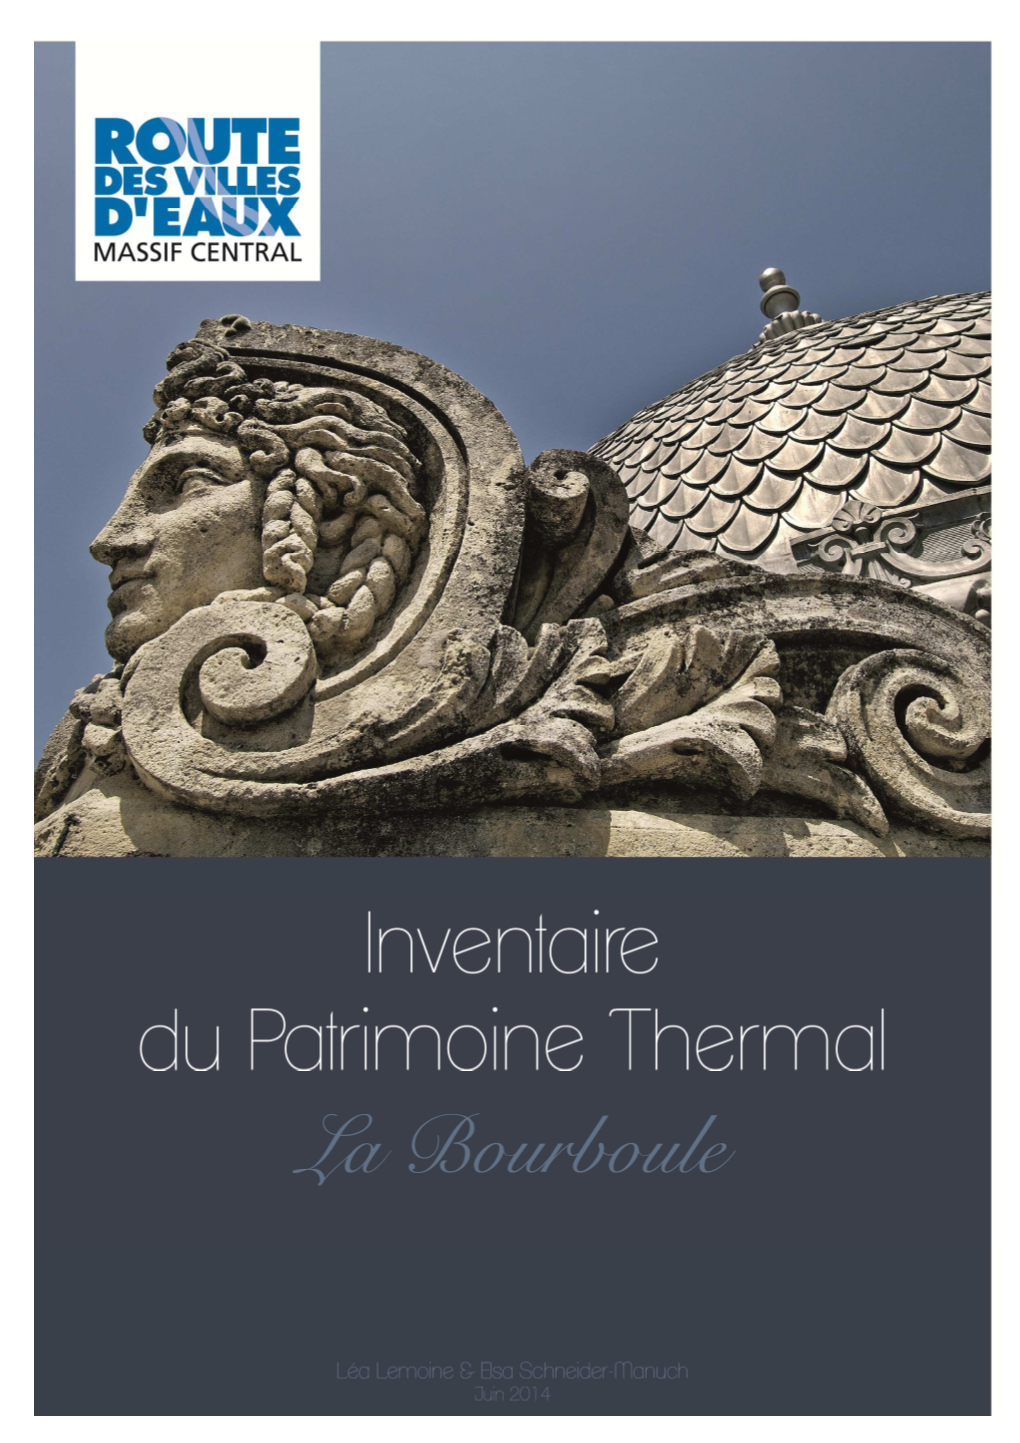 La Bourboule – Inventaire Du Patrimoine Thermal – Route Des Villes D’Eaux Du Massif Central